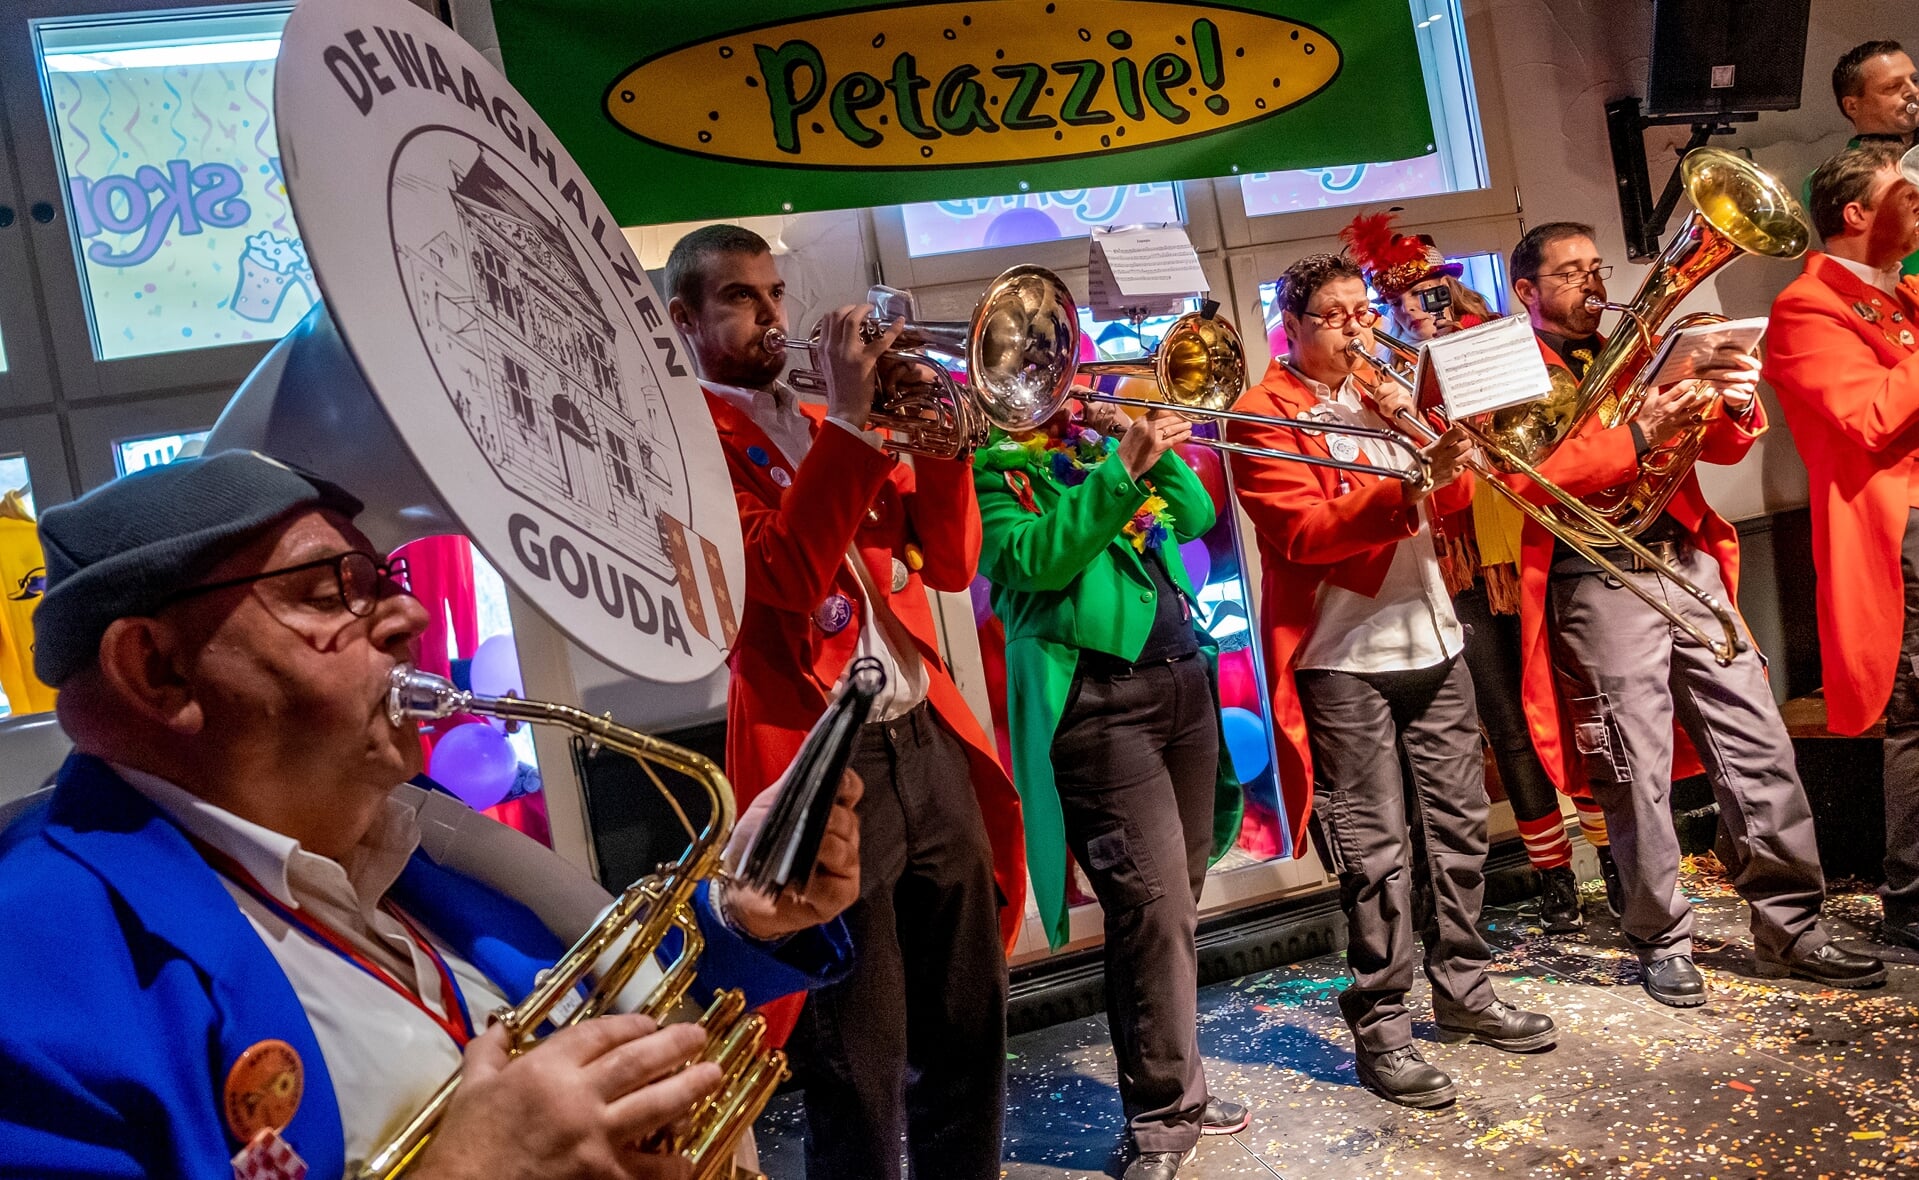 Petazzie! trok vorig jaar muziekformaties uit verschillende plekken in Nederland, zoals De Waaghalzen uit Gouda. De achttiende editie kon ternauwernood worden georganiseerd. Vlak voor carnaval werden vorig jaar de coronamaatregelen losgelaten.